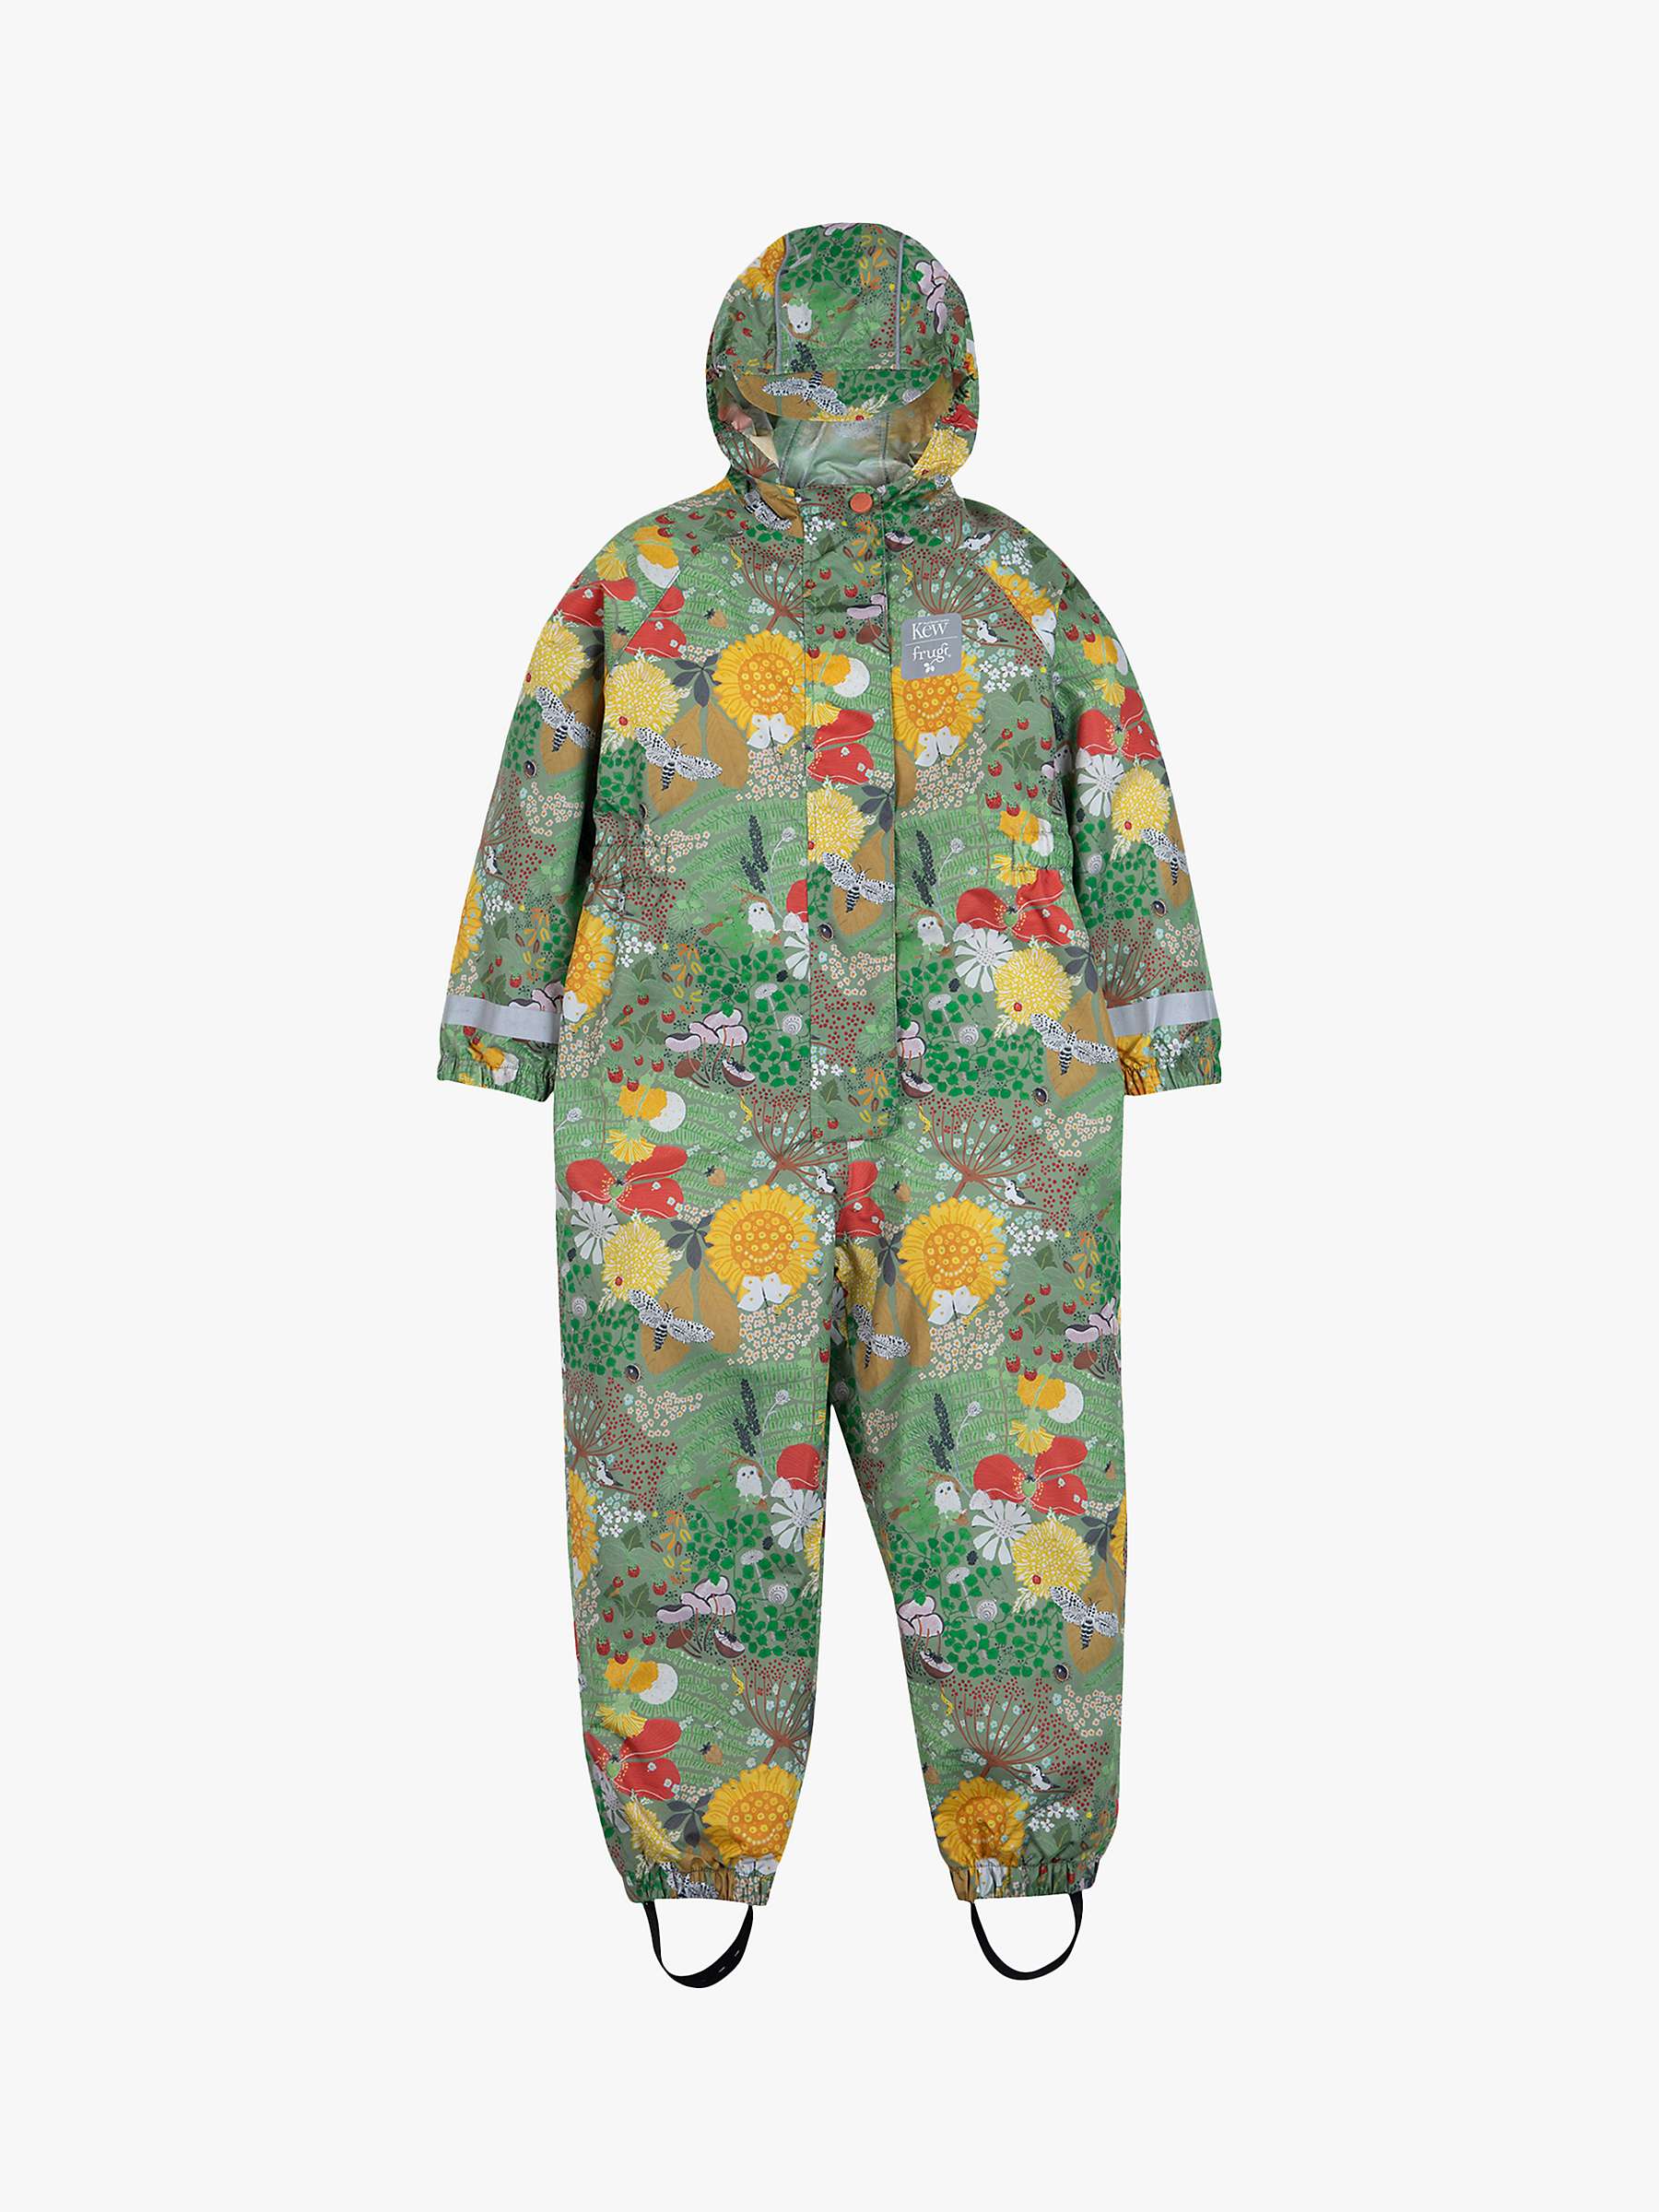 Buy Frugi Kids' Kew Gardens Rain or Shine Woody Hollow Suit, Multi Online at johnlewis.com